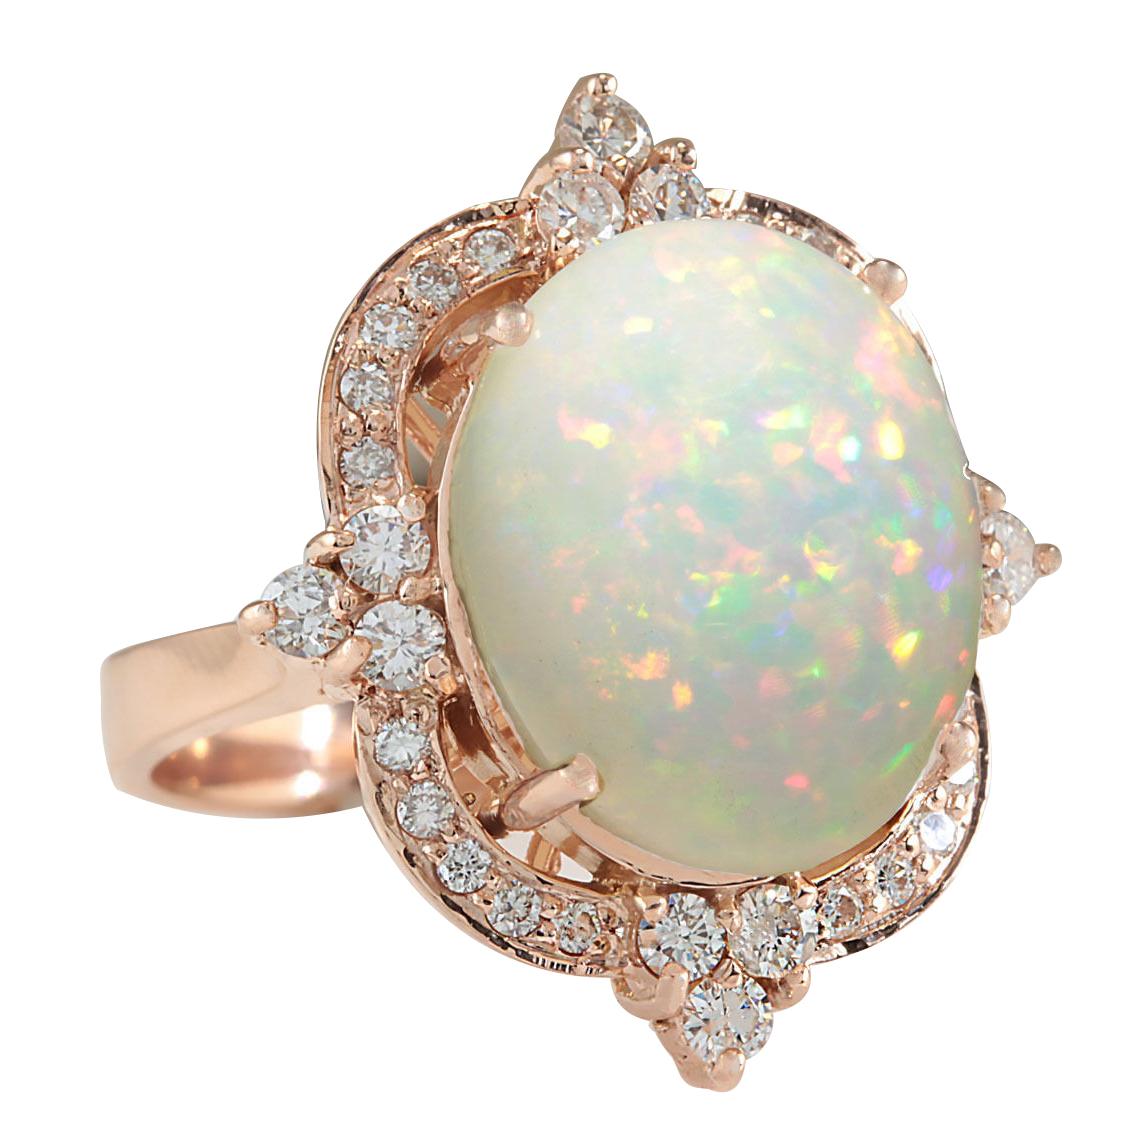 Gestempelt: 14K Rose Gold
Gesamtgewicht des Rings: 11,2 Gramm
Das Gesamtgewicht des natürlichen Opals beträgt 10,80 Karat (Maße: 16,00x12,00 mm)
Farbe: Multicolor
Gesamtgewicht des natürlichen Diamanten: 0,80 Karat
Farbe: F-G, Reinheit: